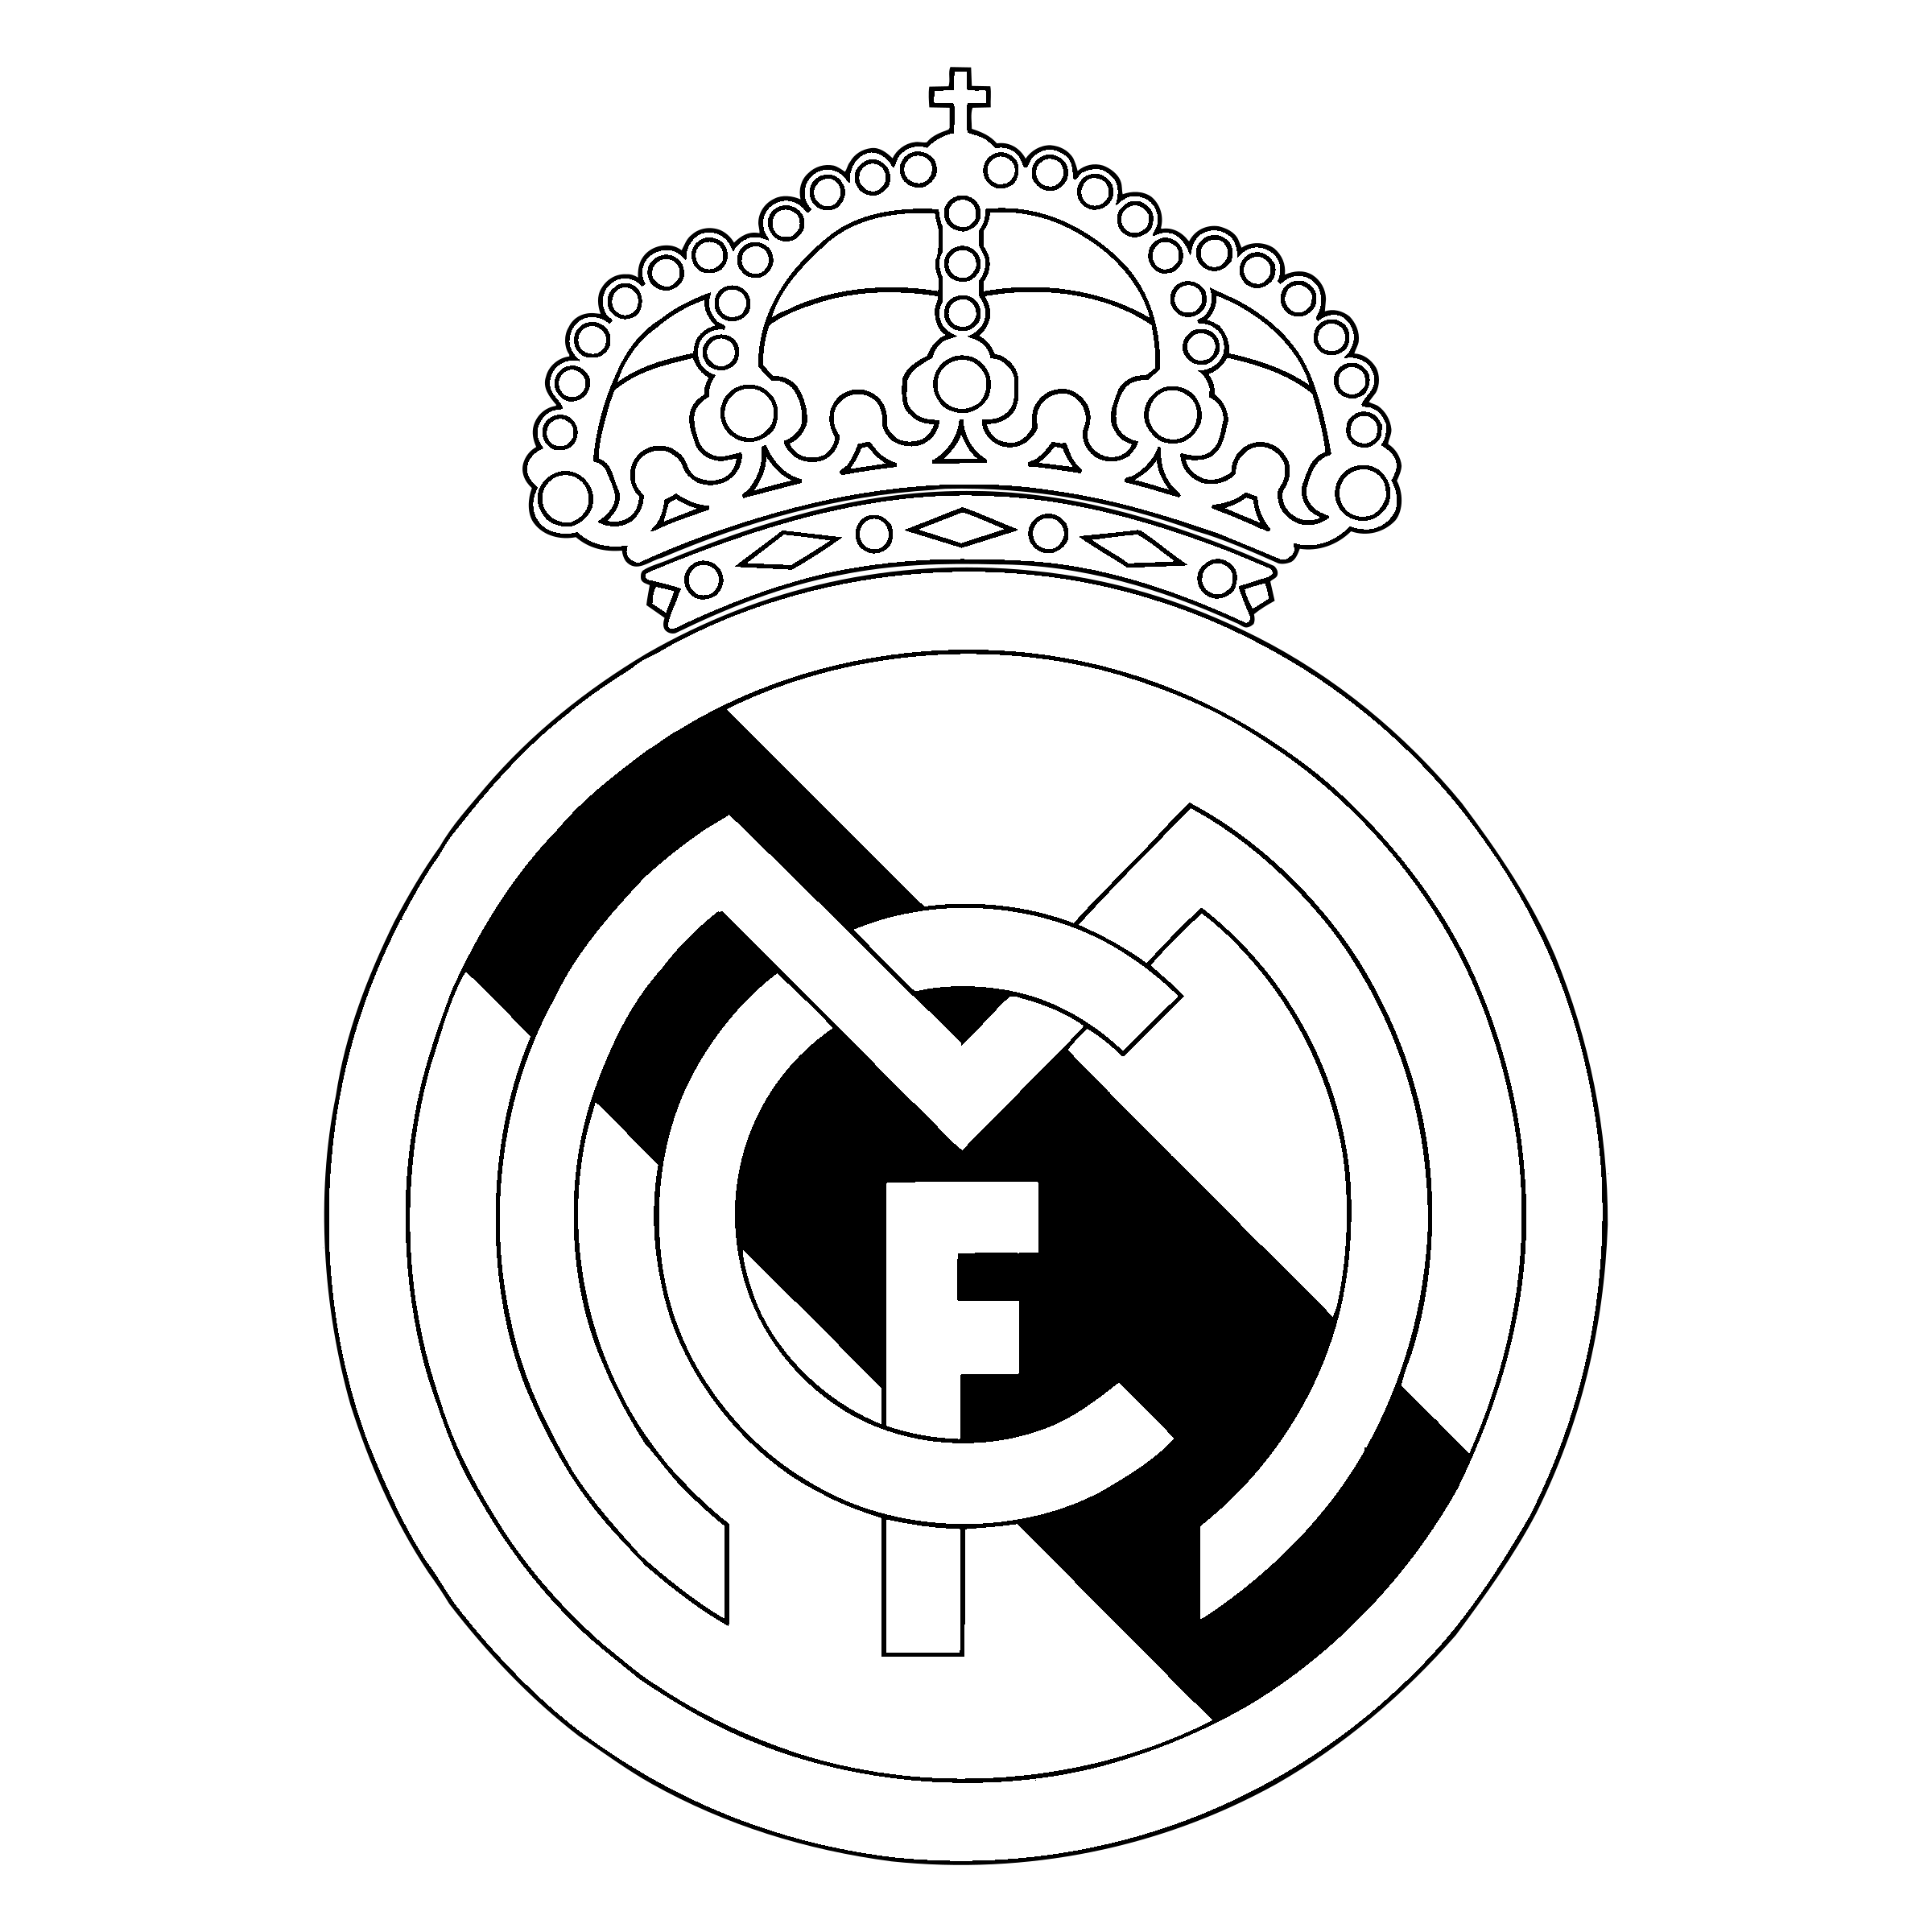 Футбольный клуб Реал Мадрид лого. Значок футбольной команды Реал Мадрид. Реал Мадрид герб футбольного клуба. ФК Реал Мадрид PNG. Лого мадрида